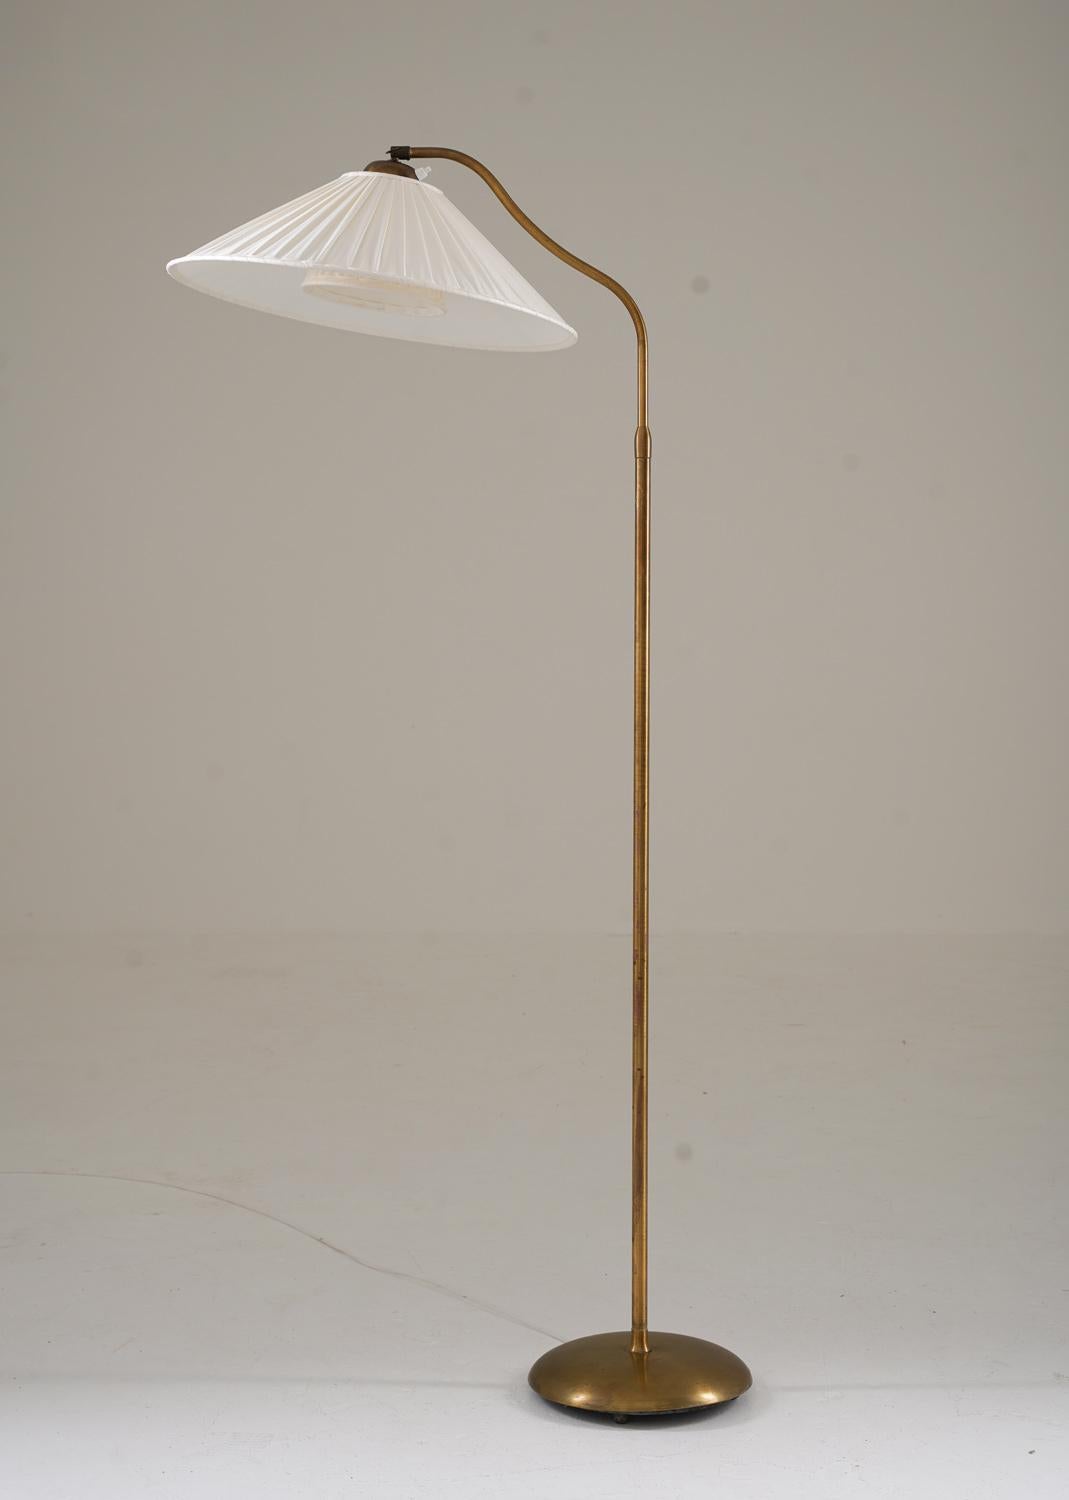 Il s'agit d'un joli lampadaire moderne suédois qui a été fabriqué en Suède dans les années 1940.
La lampe comporte une base en fer revêtue de laiton et une tige en laiton, qui soutient un bras pivotant qui porte l'abat-jour. Le bras pivotant est